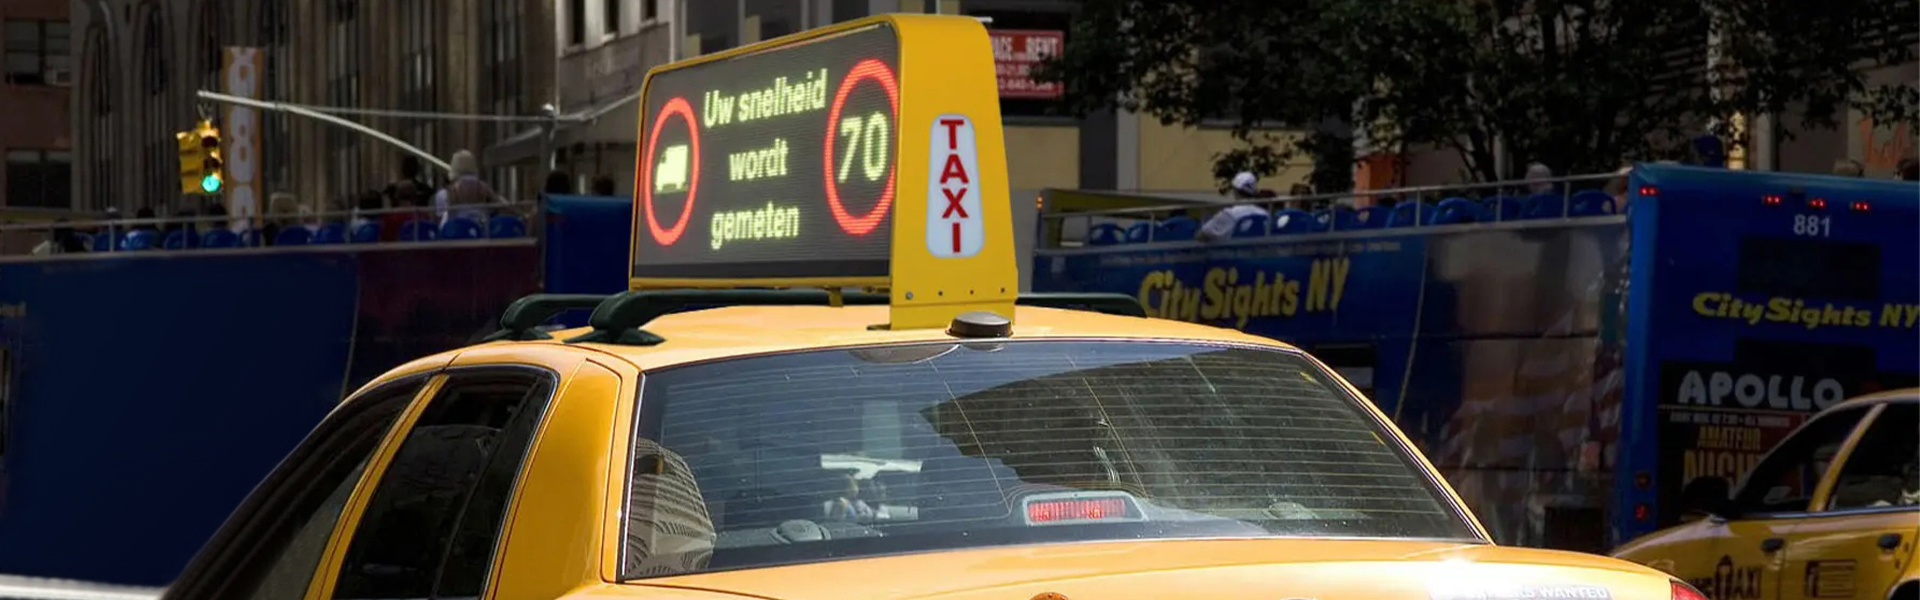 टैक्सी टॉप एलईडी स्क्रीन एप्लीकेशन